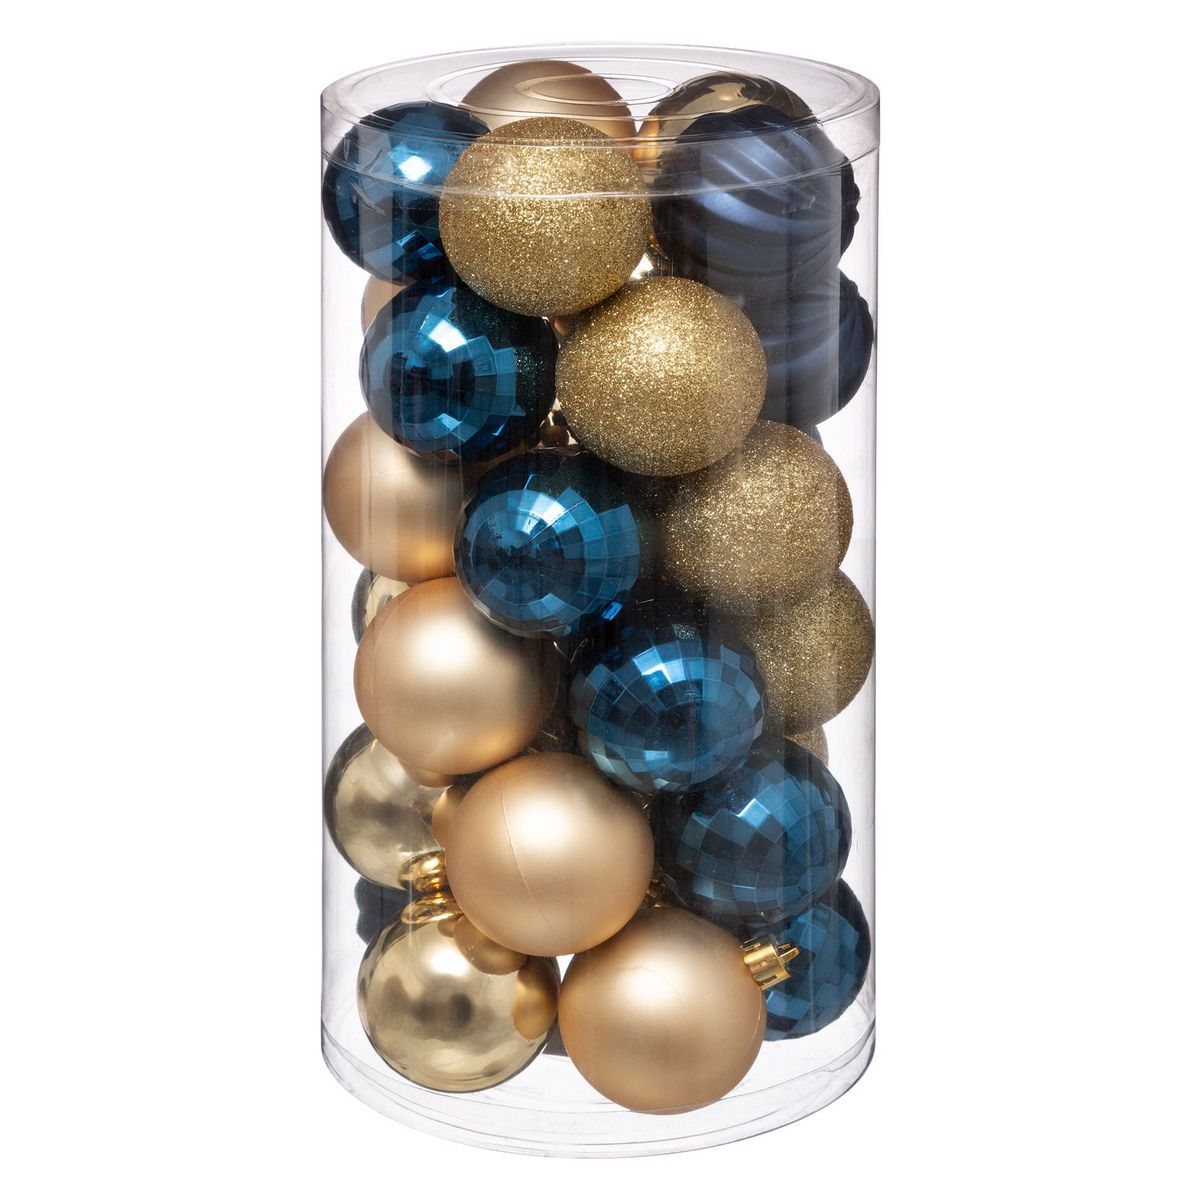  Kit Décoration pour sapin de Noël - 30 Pièces - Bleu et or